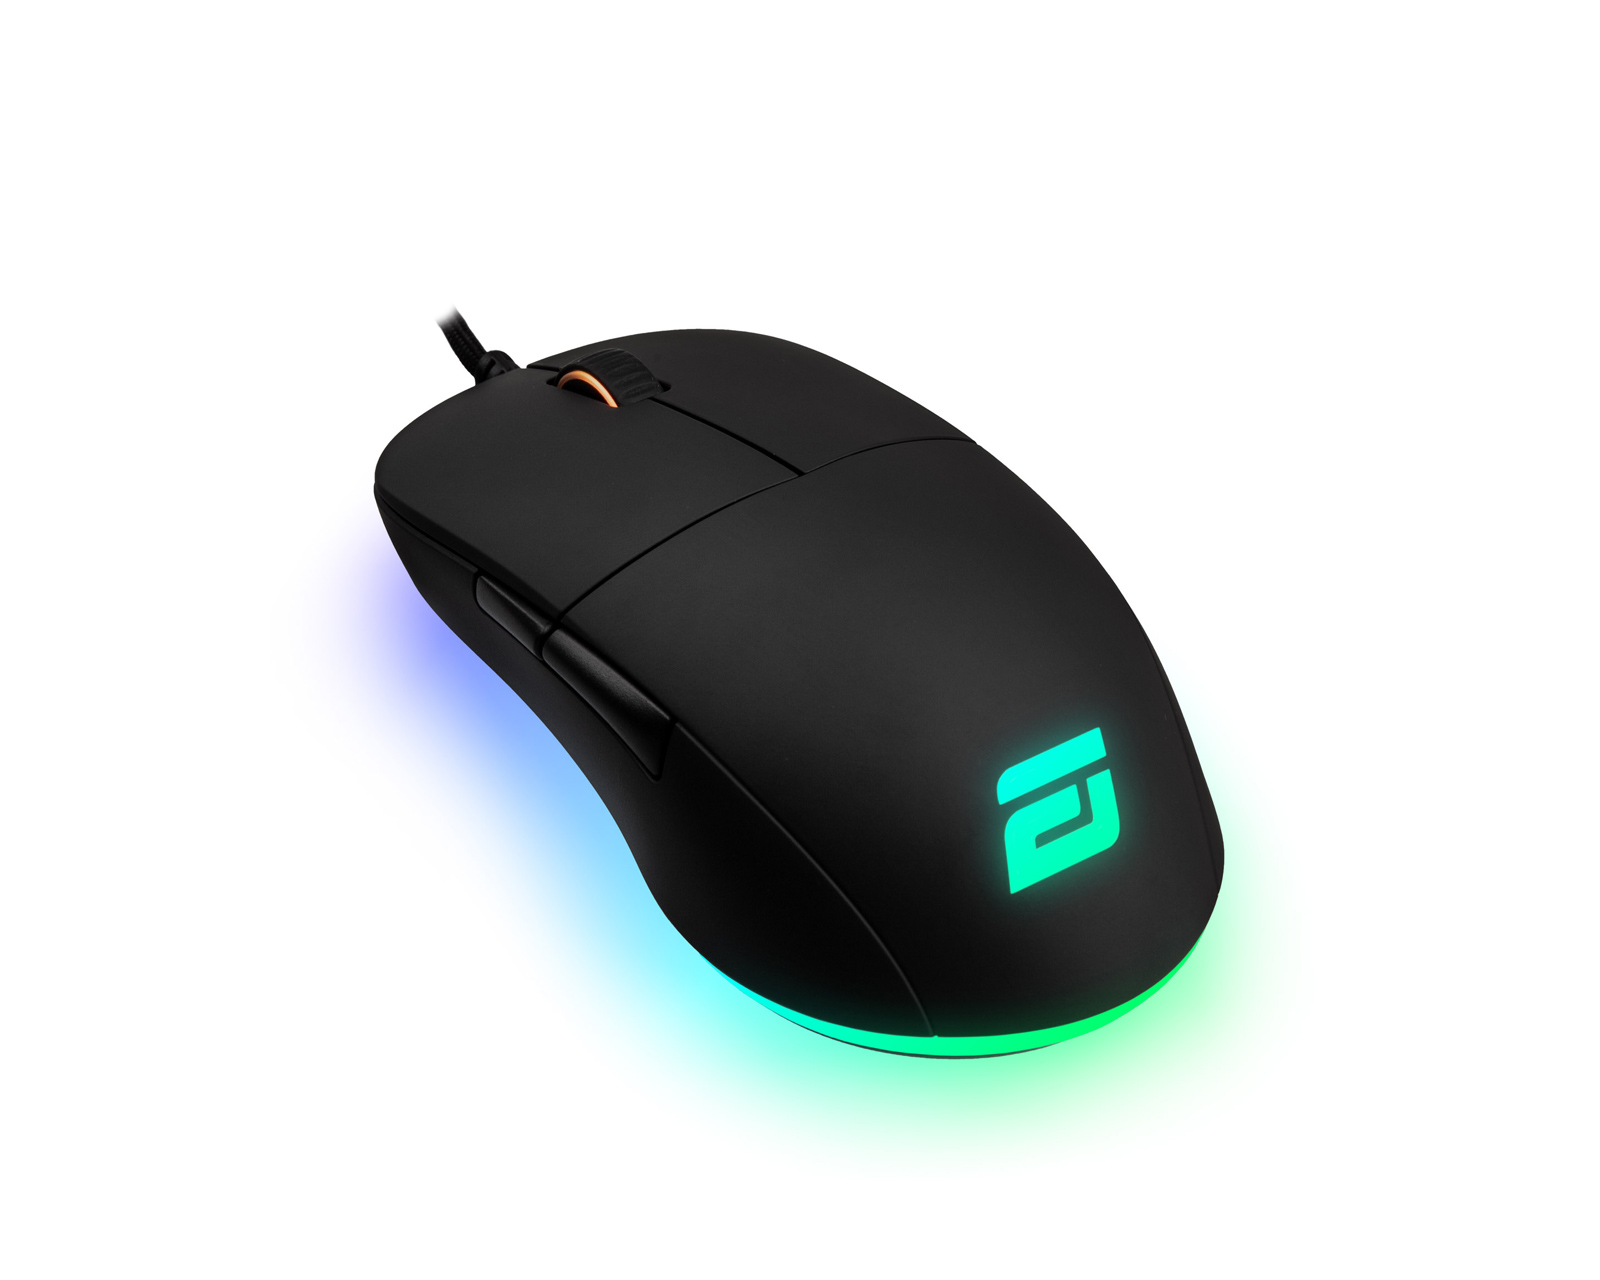 Buy Endgame Gear Xm1 Rgb Gaming Mouse Black At Maxgaming Com